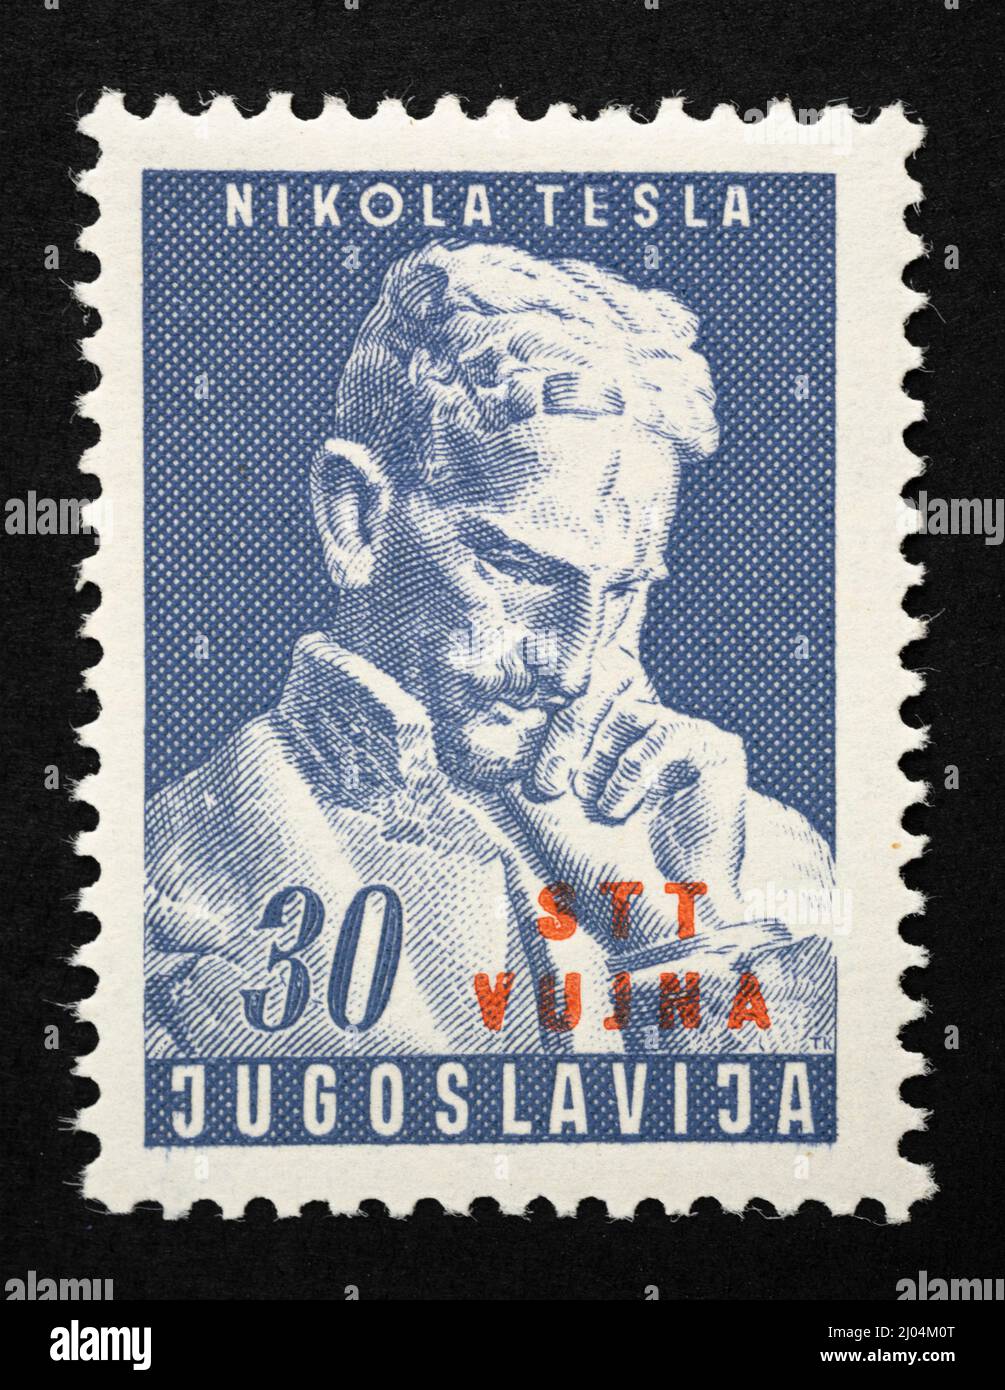 Festliche Briefmarke mit dem Bild von Nikola Tesla aus dem ehemaligen Jugoslawien mit dem Aufdruck des freien Territoriums von Triest, Zone B des Jahres 19 Stockfoto